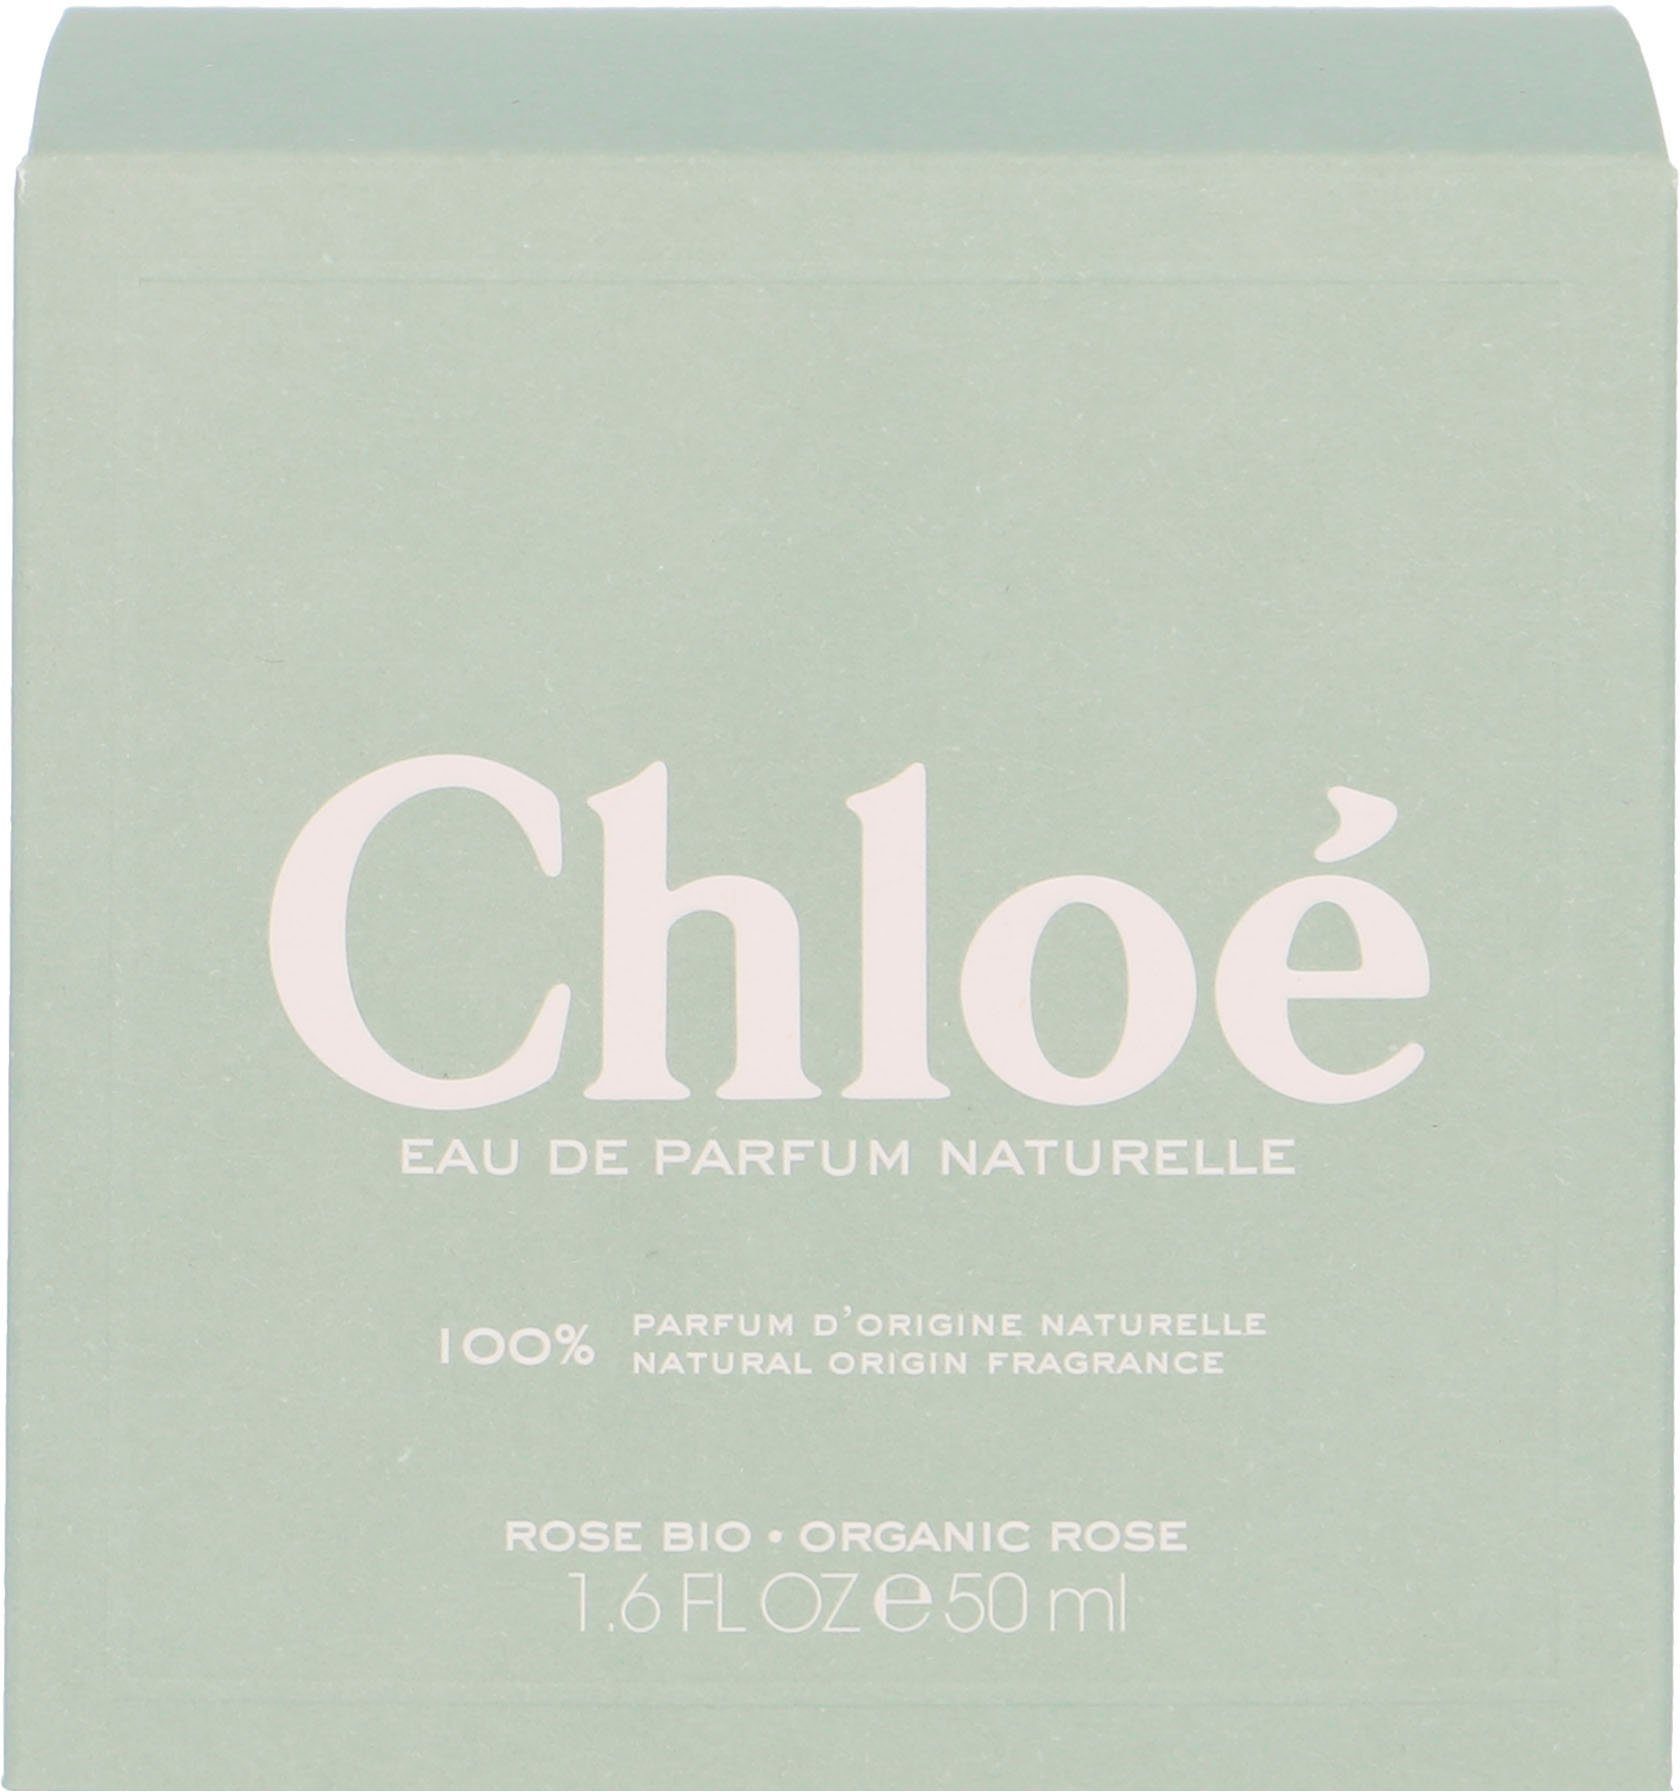 Signature Naturelle Chloé Parfum Eau de